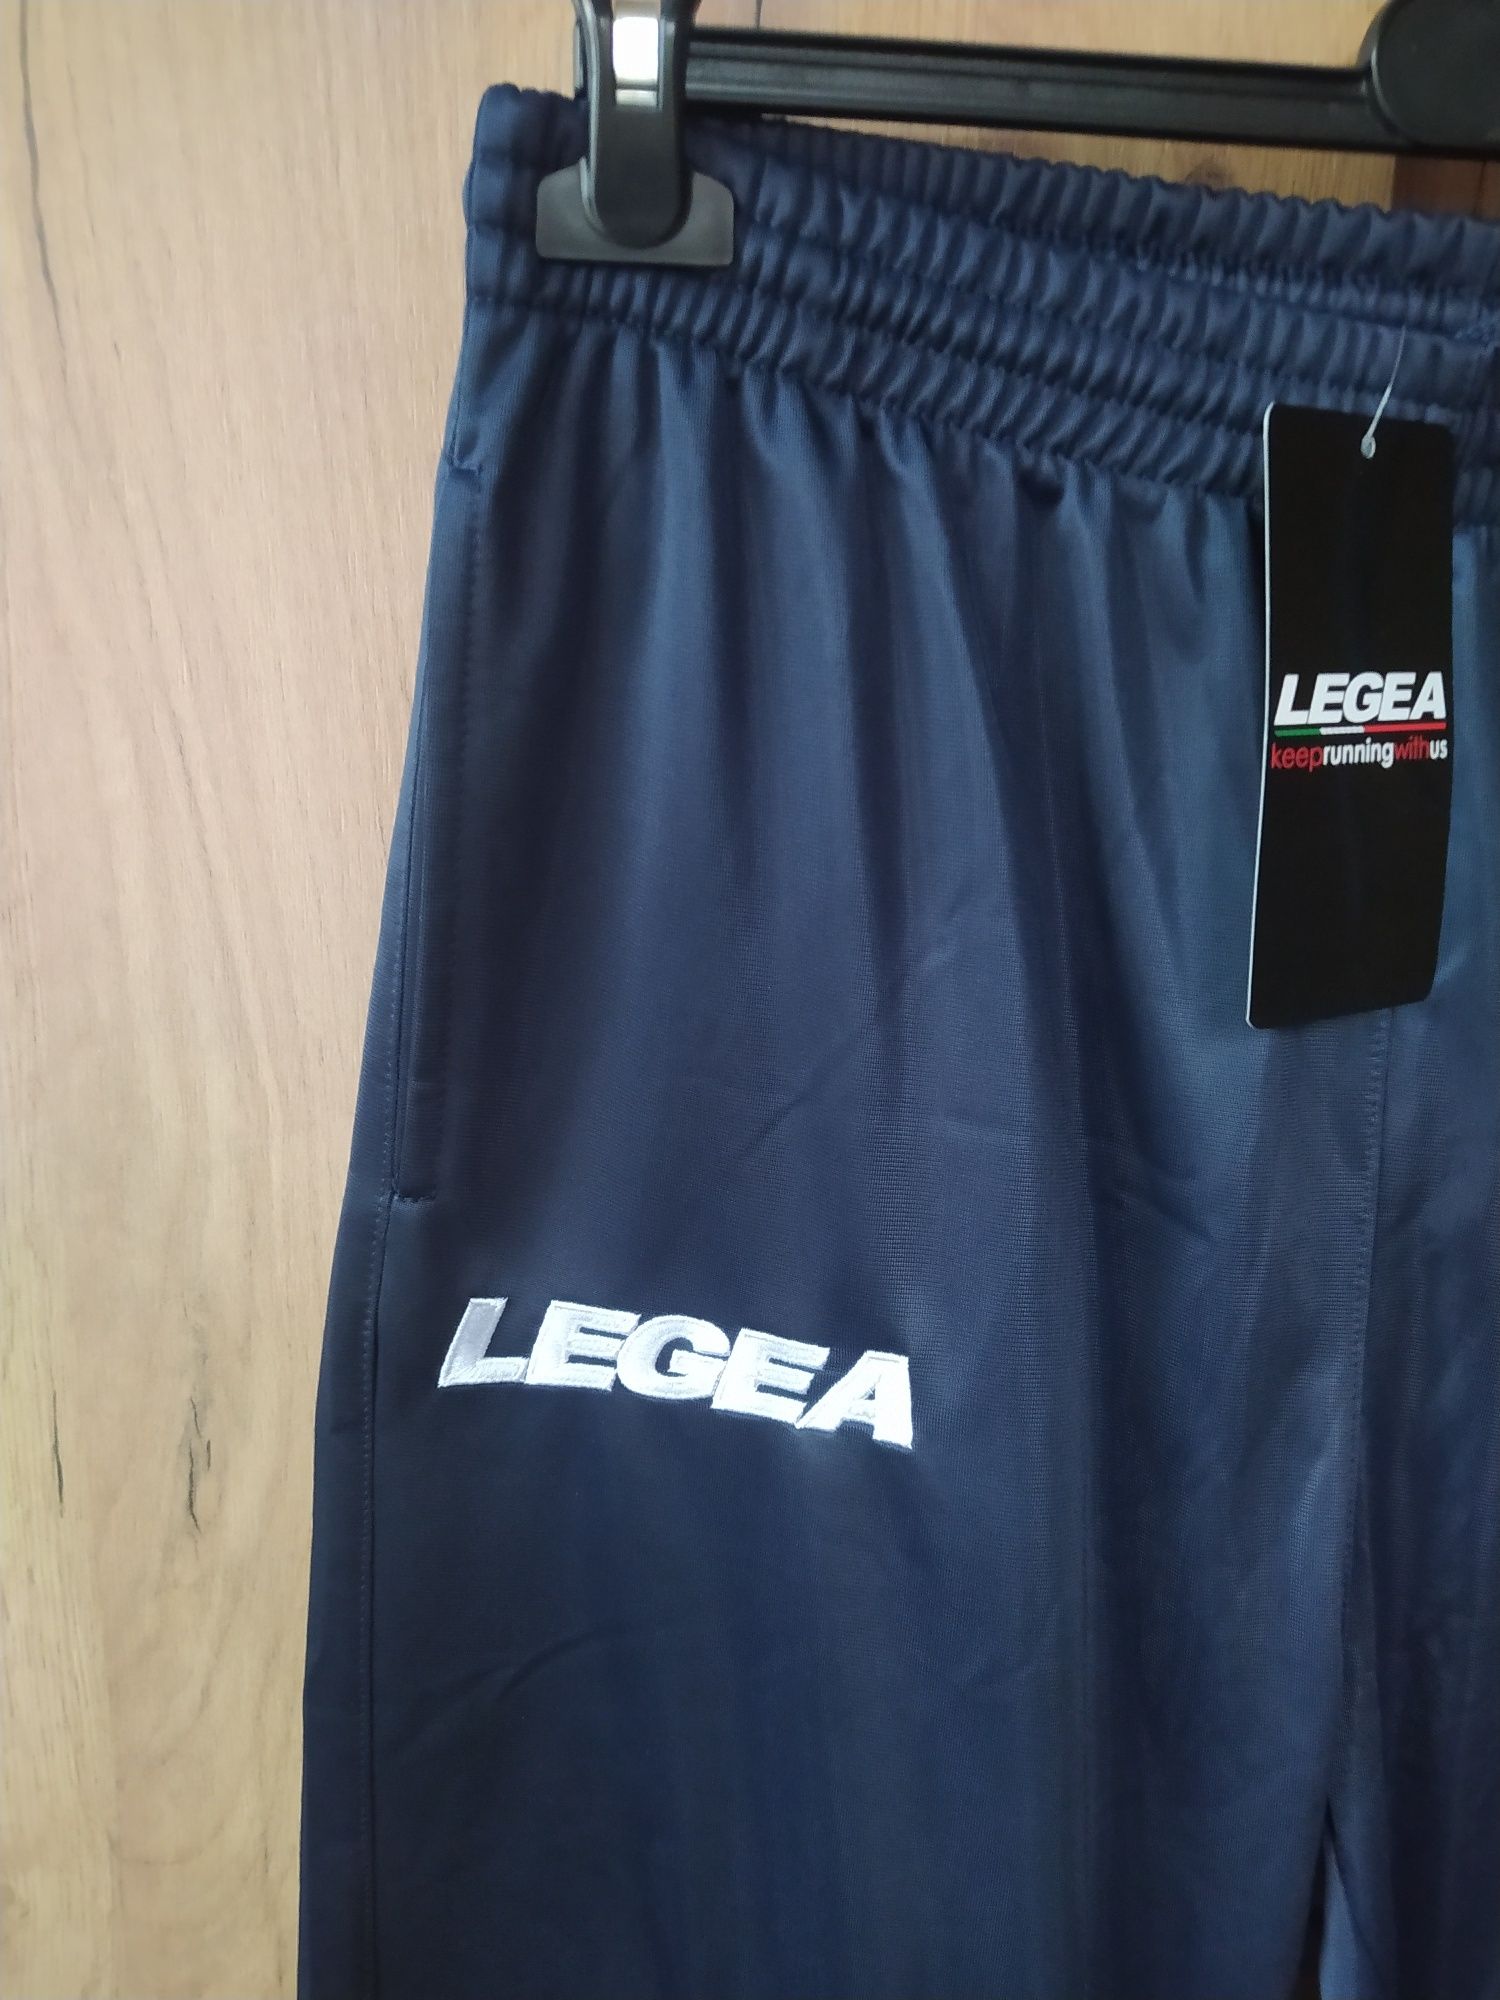 Spodnie sportowe firmy Legea, rozmiar XXL, męskie, nowe z metką, kiesz